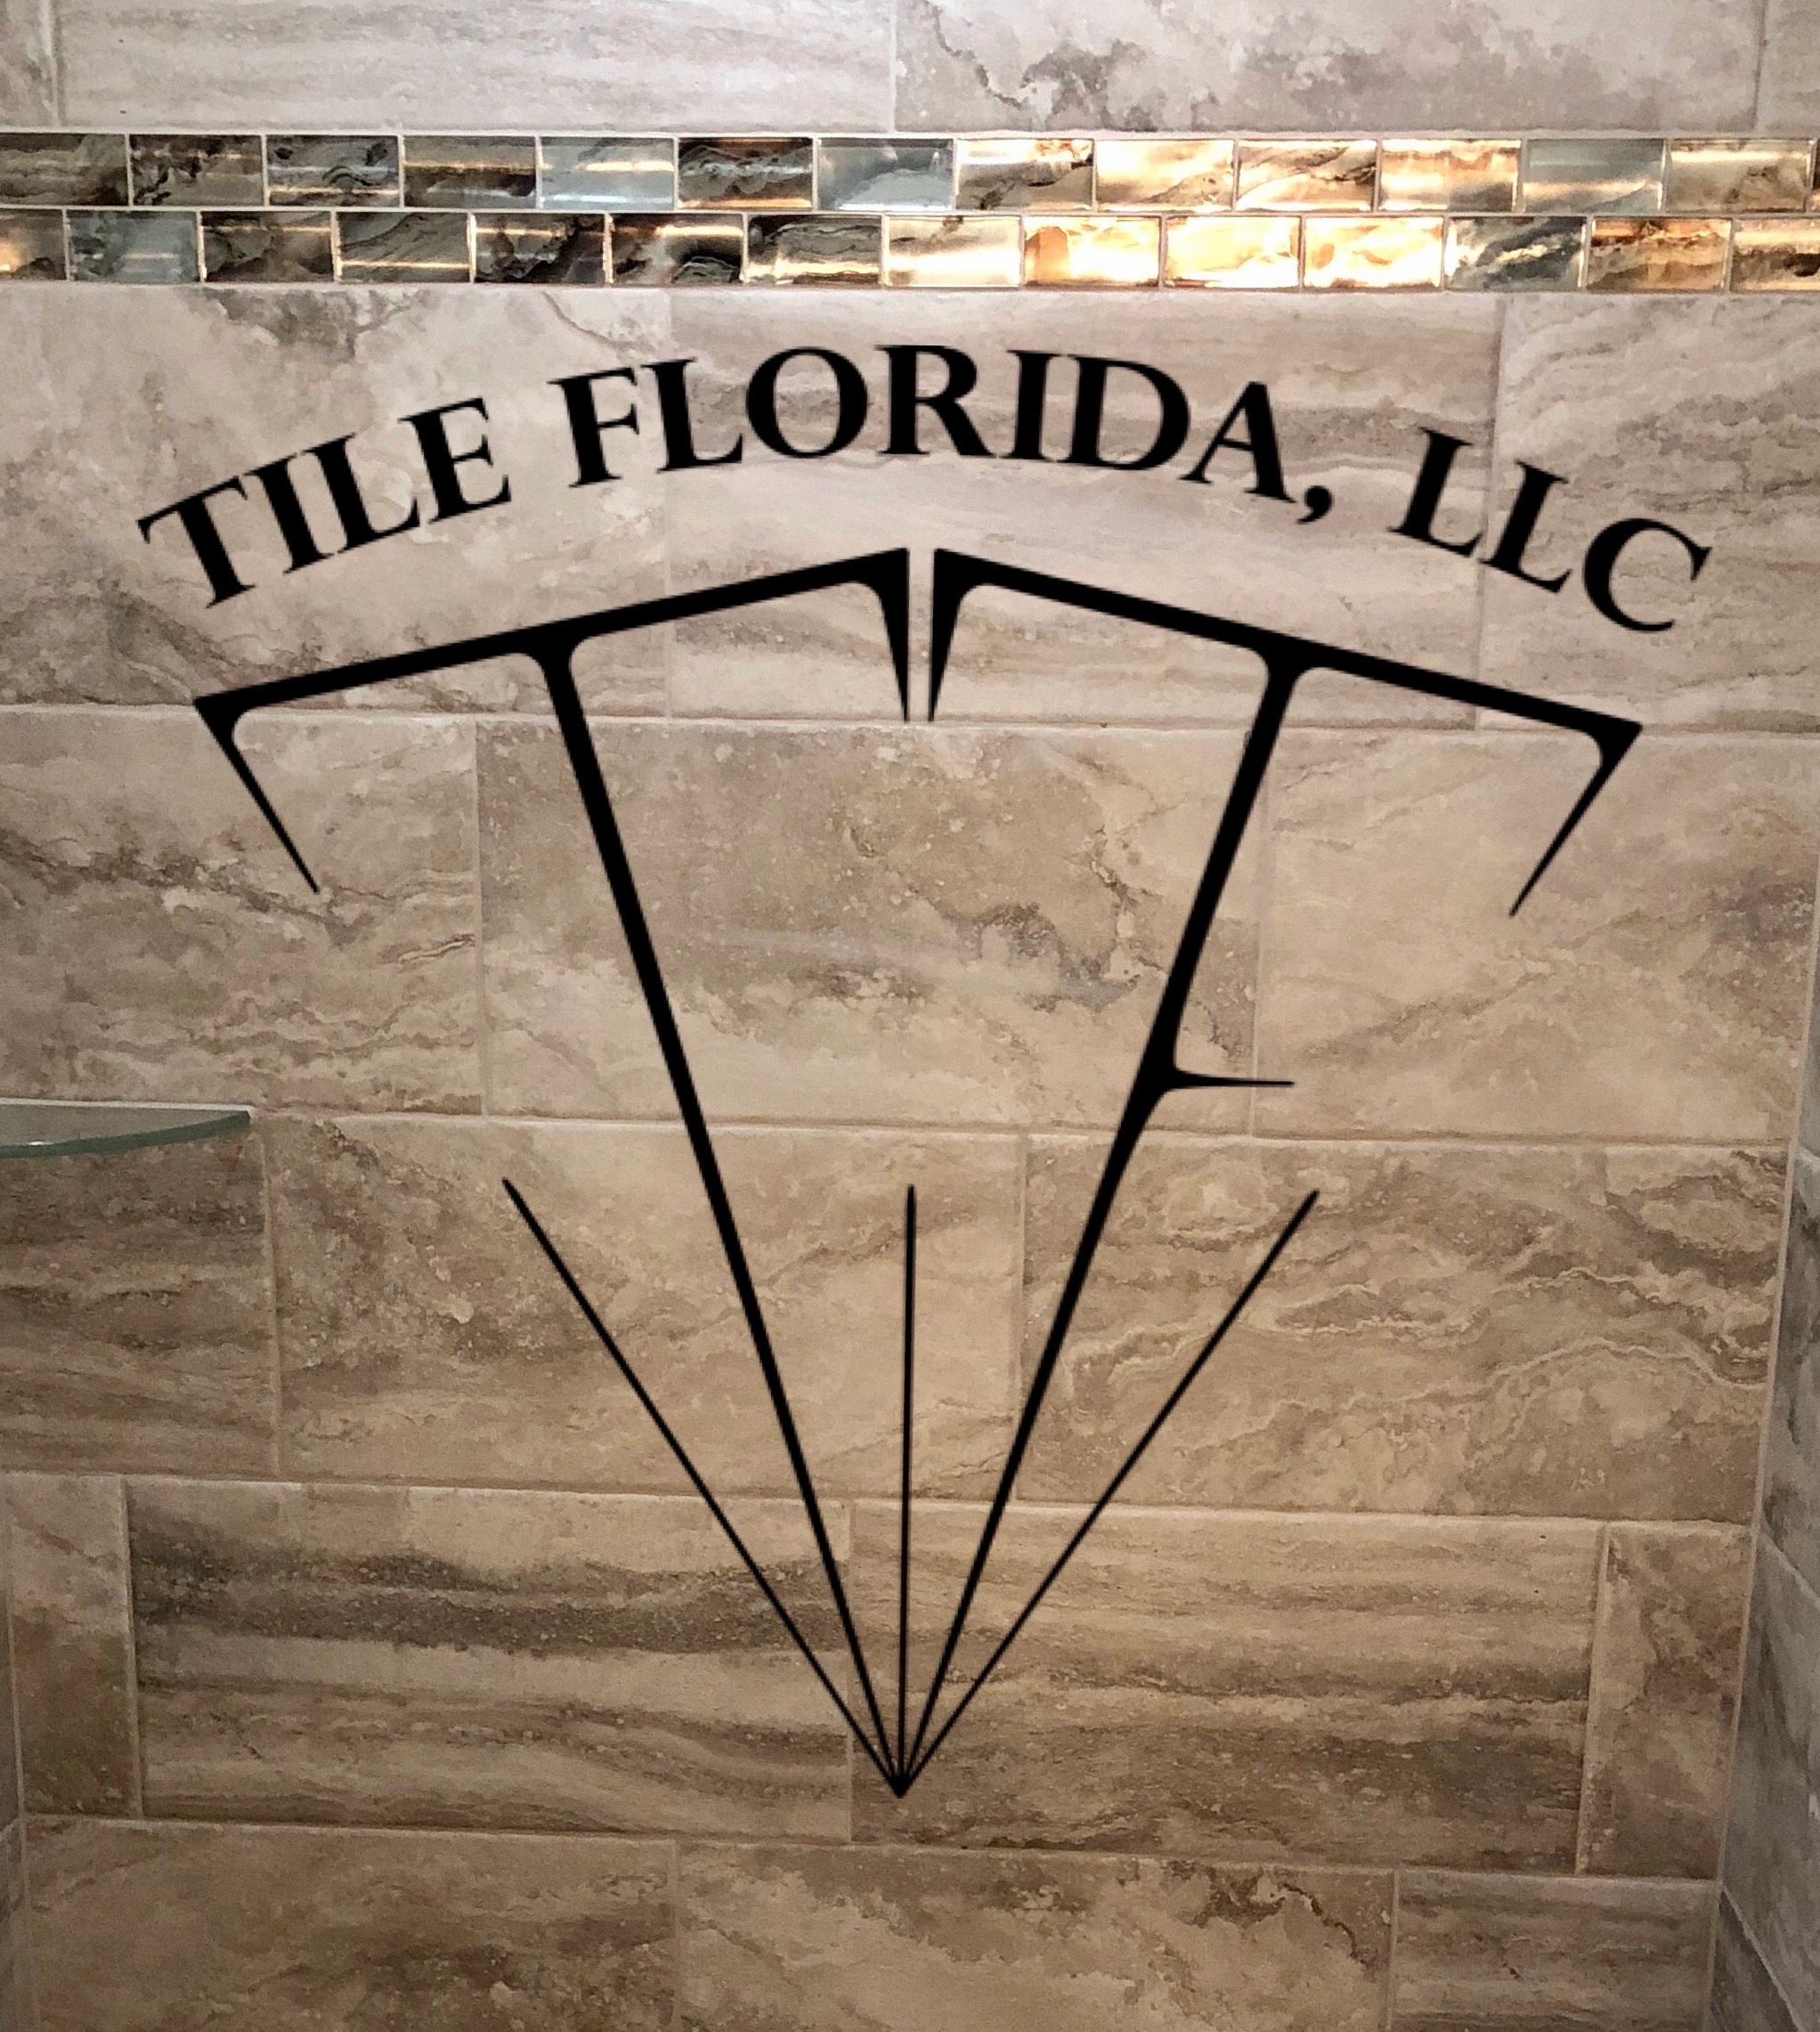 Tile Florida LLC  tile Florida Florida tile tilling tile contractor tile installer flooring bathroom